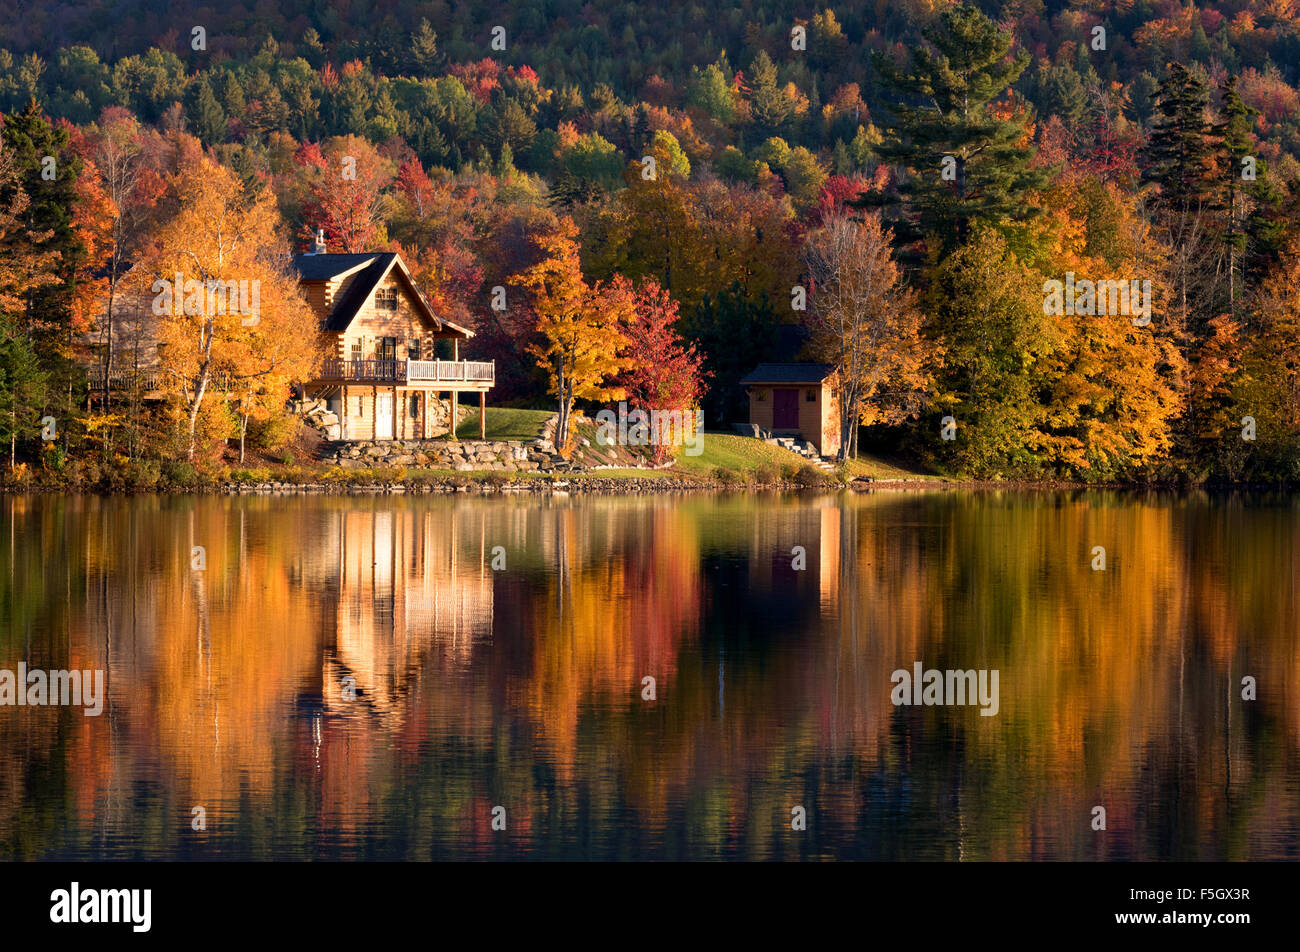 Maison du Lac, coucher de soleil d'automne, Vermont Nouvelle-angleterre, États-Unis (voir aussi F5GWF3) Banque D'Images